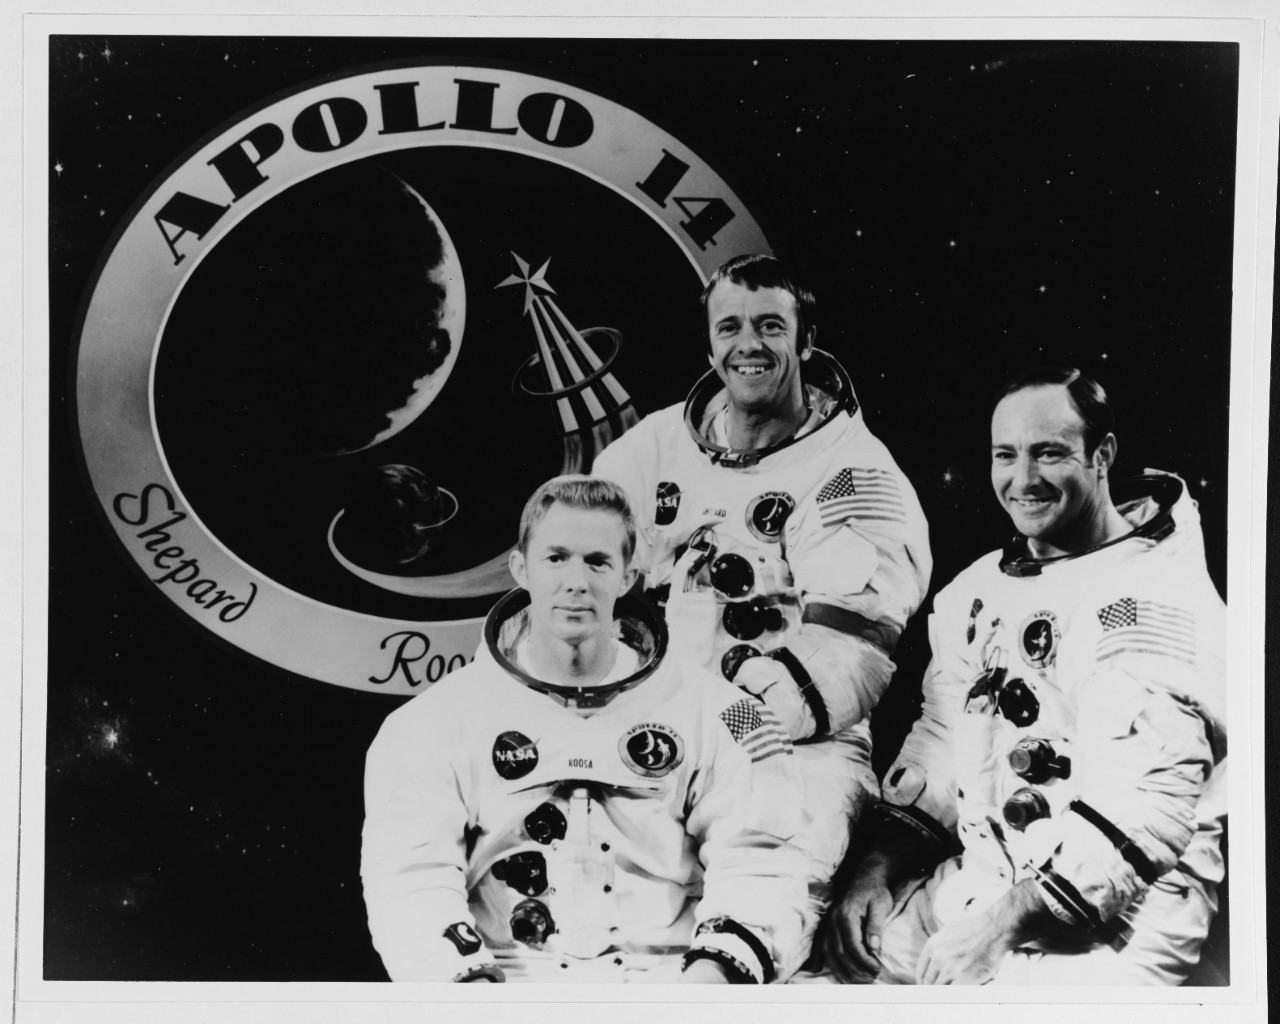 Apollo 14 Astronauts